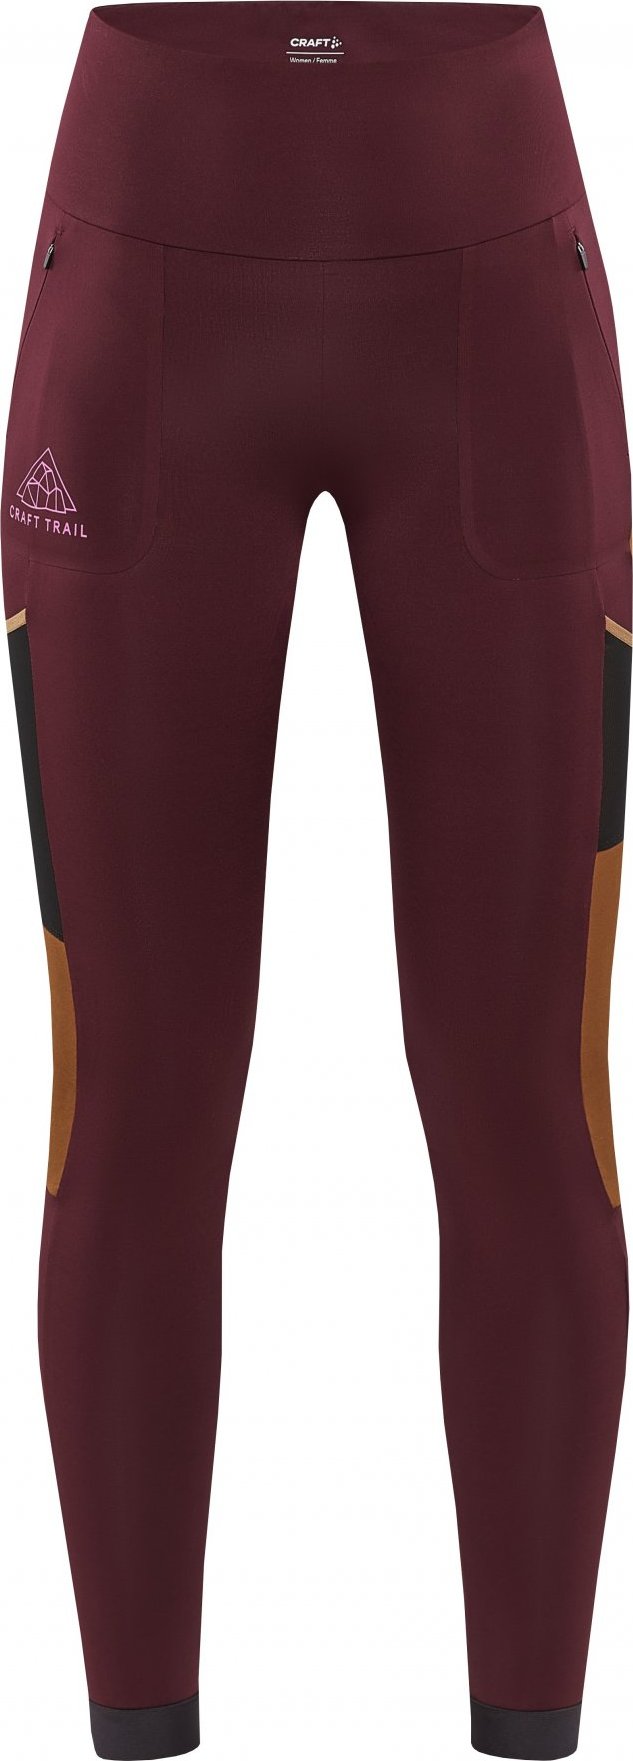 Dámské elastické kalhoty CRAFT Pro Trail Tights fialové Velikost: L